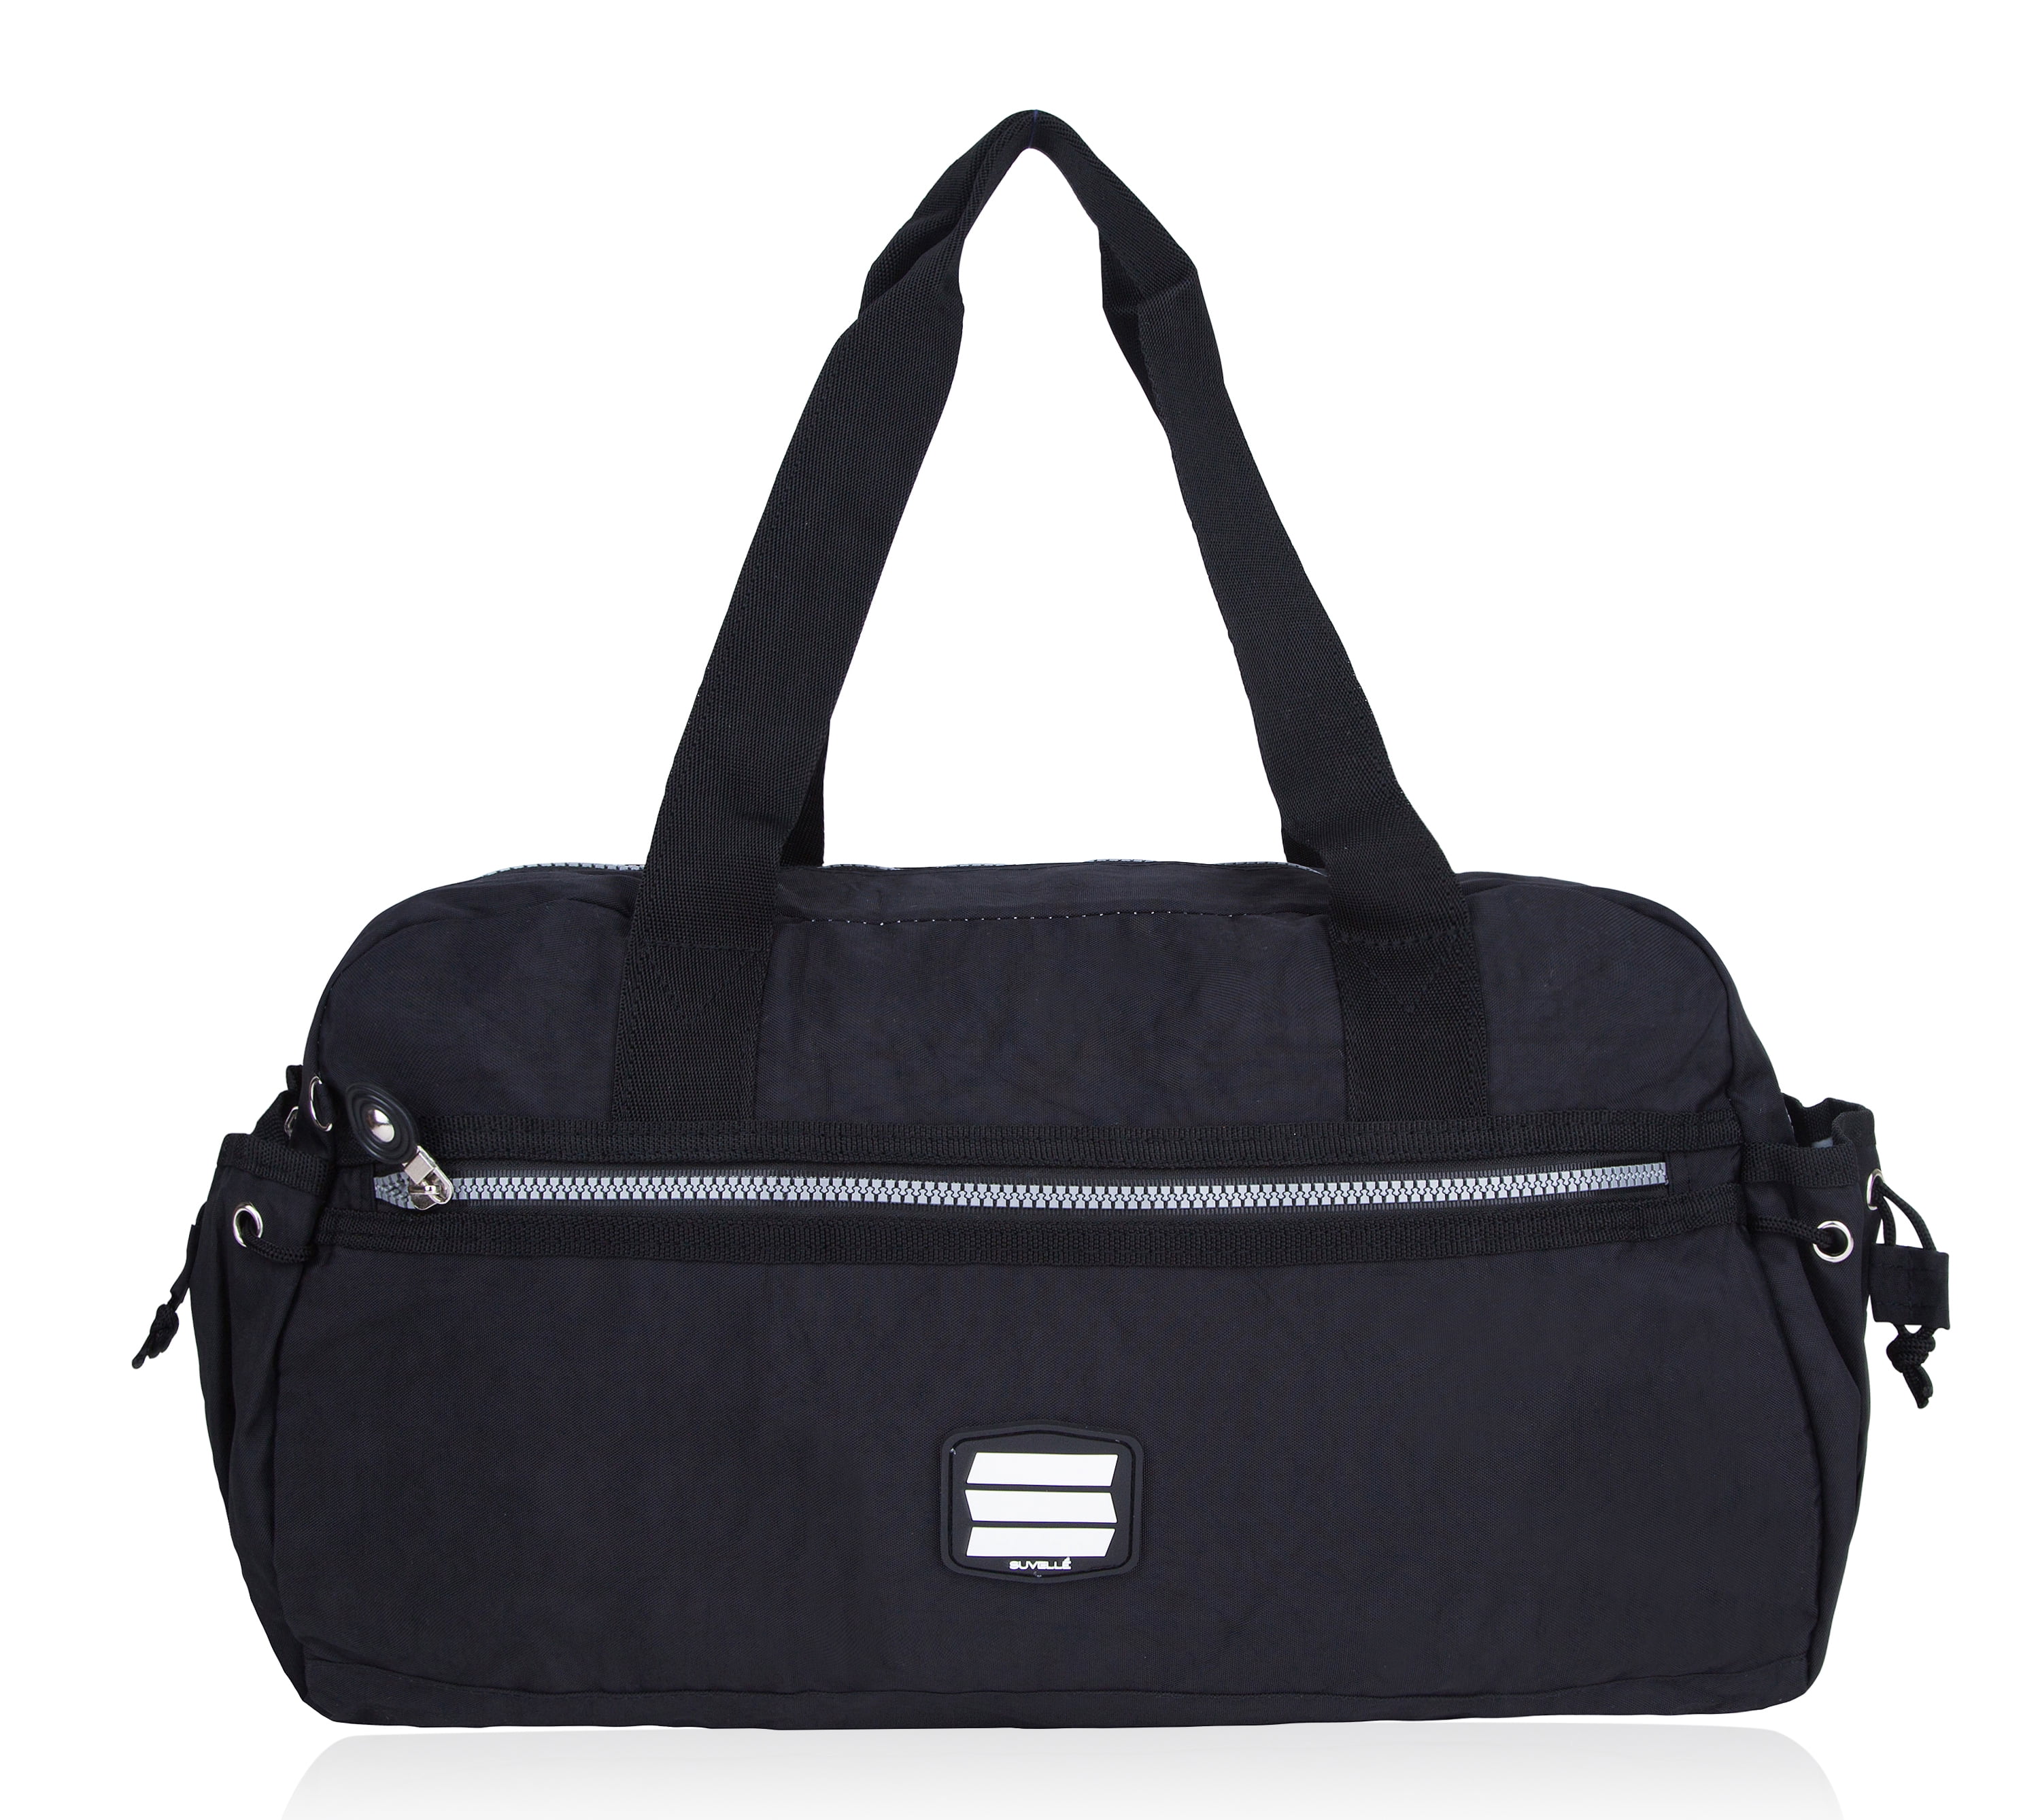 Lightweight Small Duffel Weekend Handbag Luggage Gym Sports Travel ...